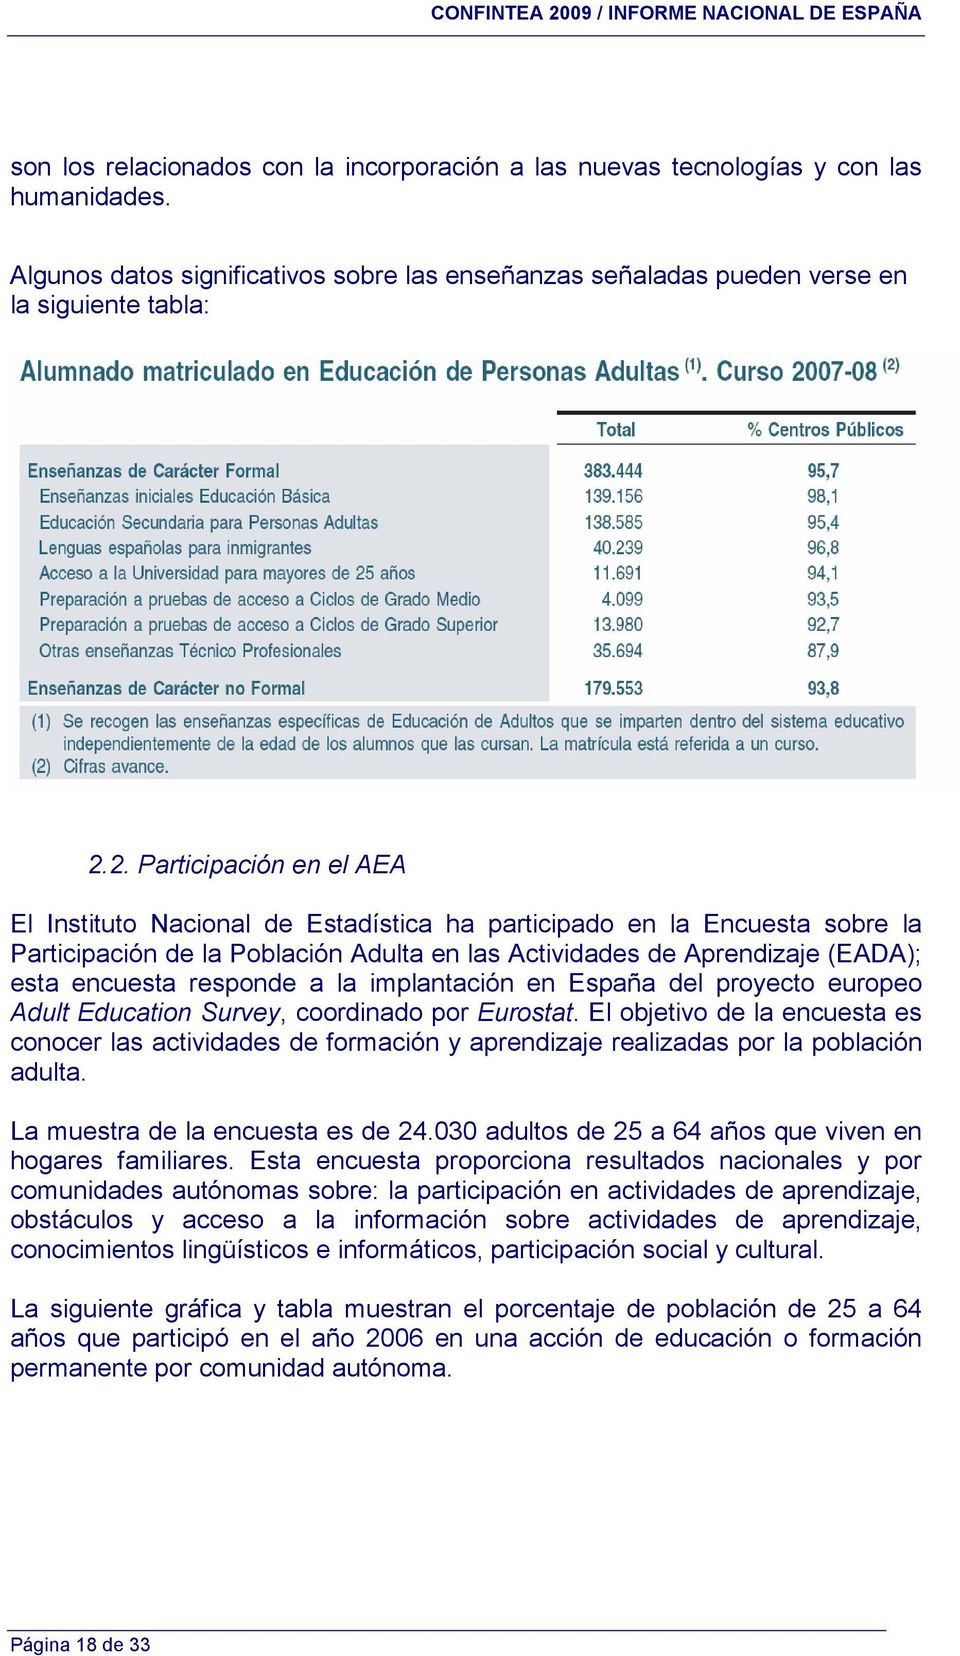 responde a la implantación en España del proyecto europeo Adult Education Survey, coordinado por Eurostat.